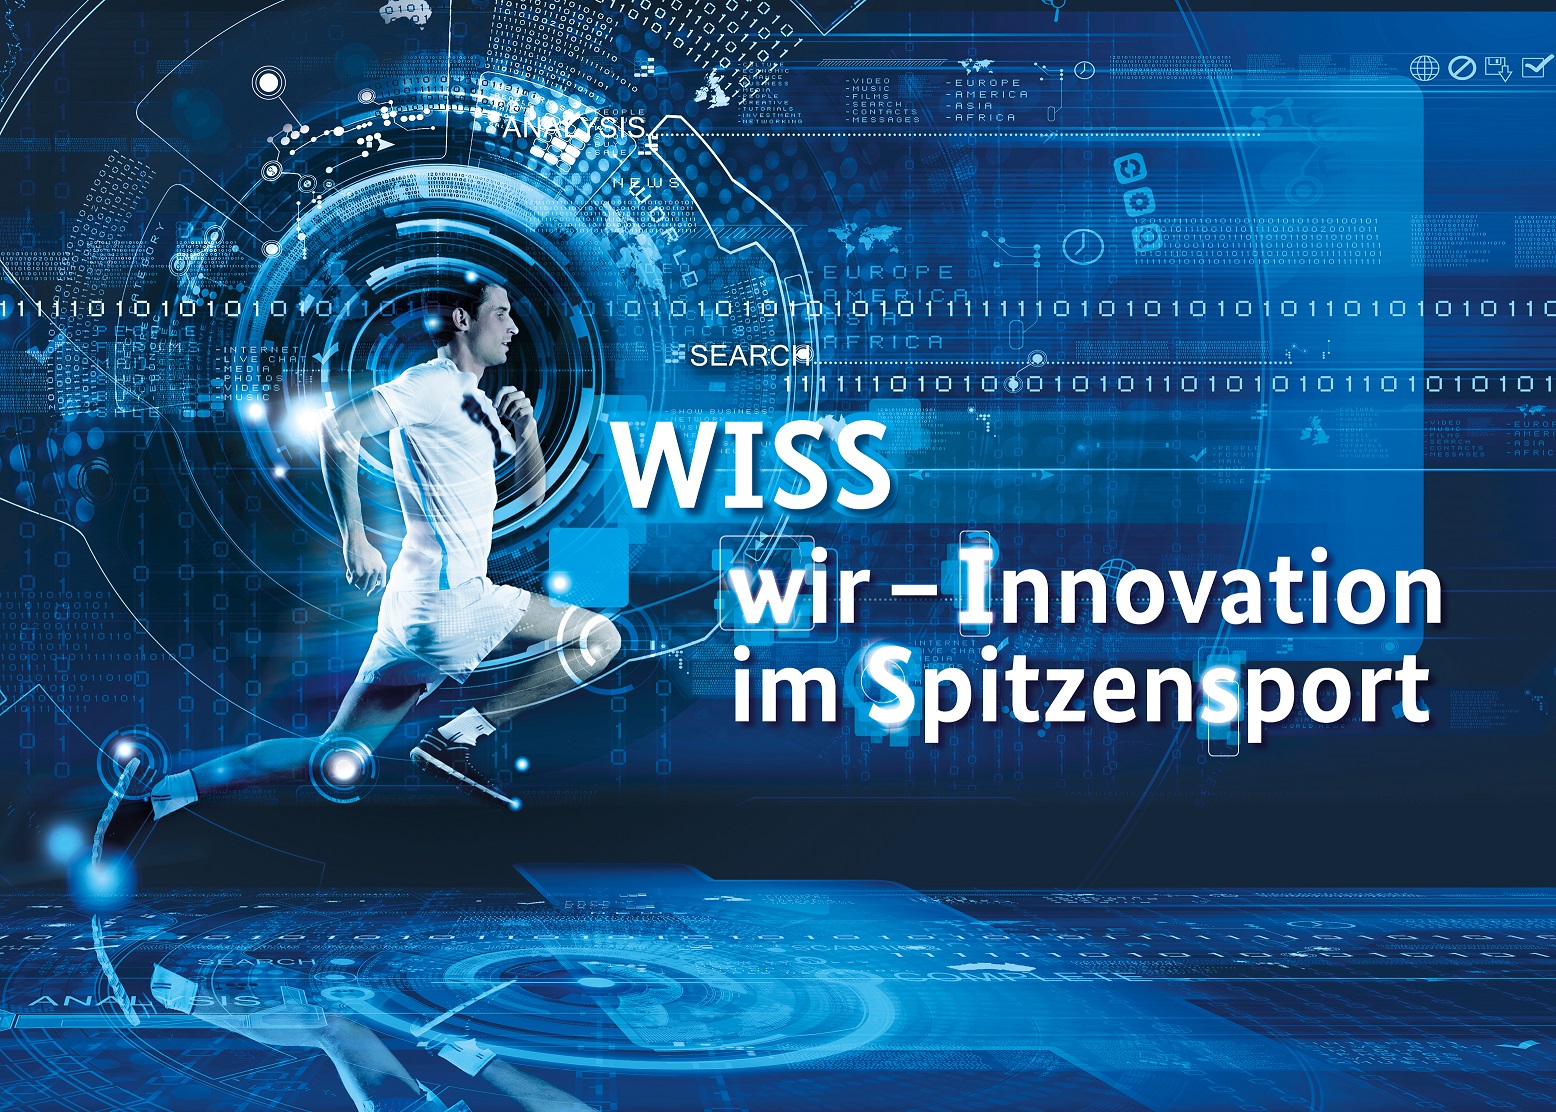 WISS-Netzwerktreffen auf der Gamescom 2019 & ExpoTour mit der German Cycling Academy